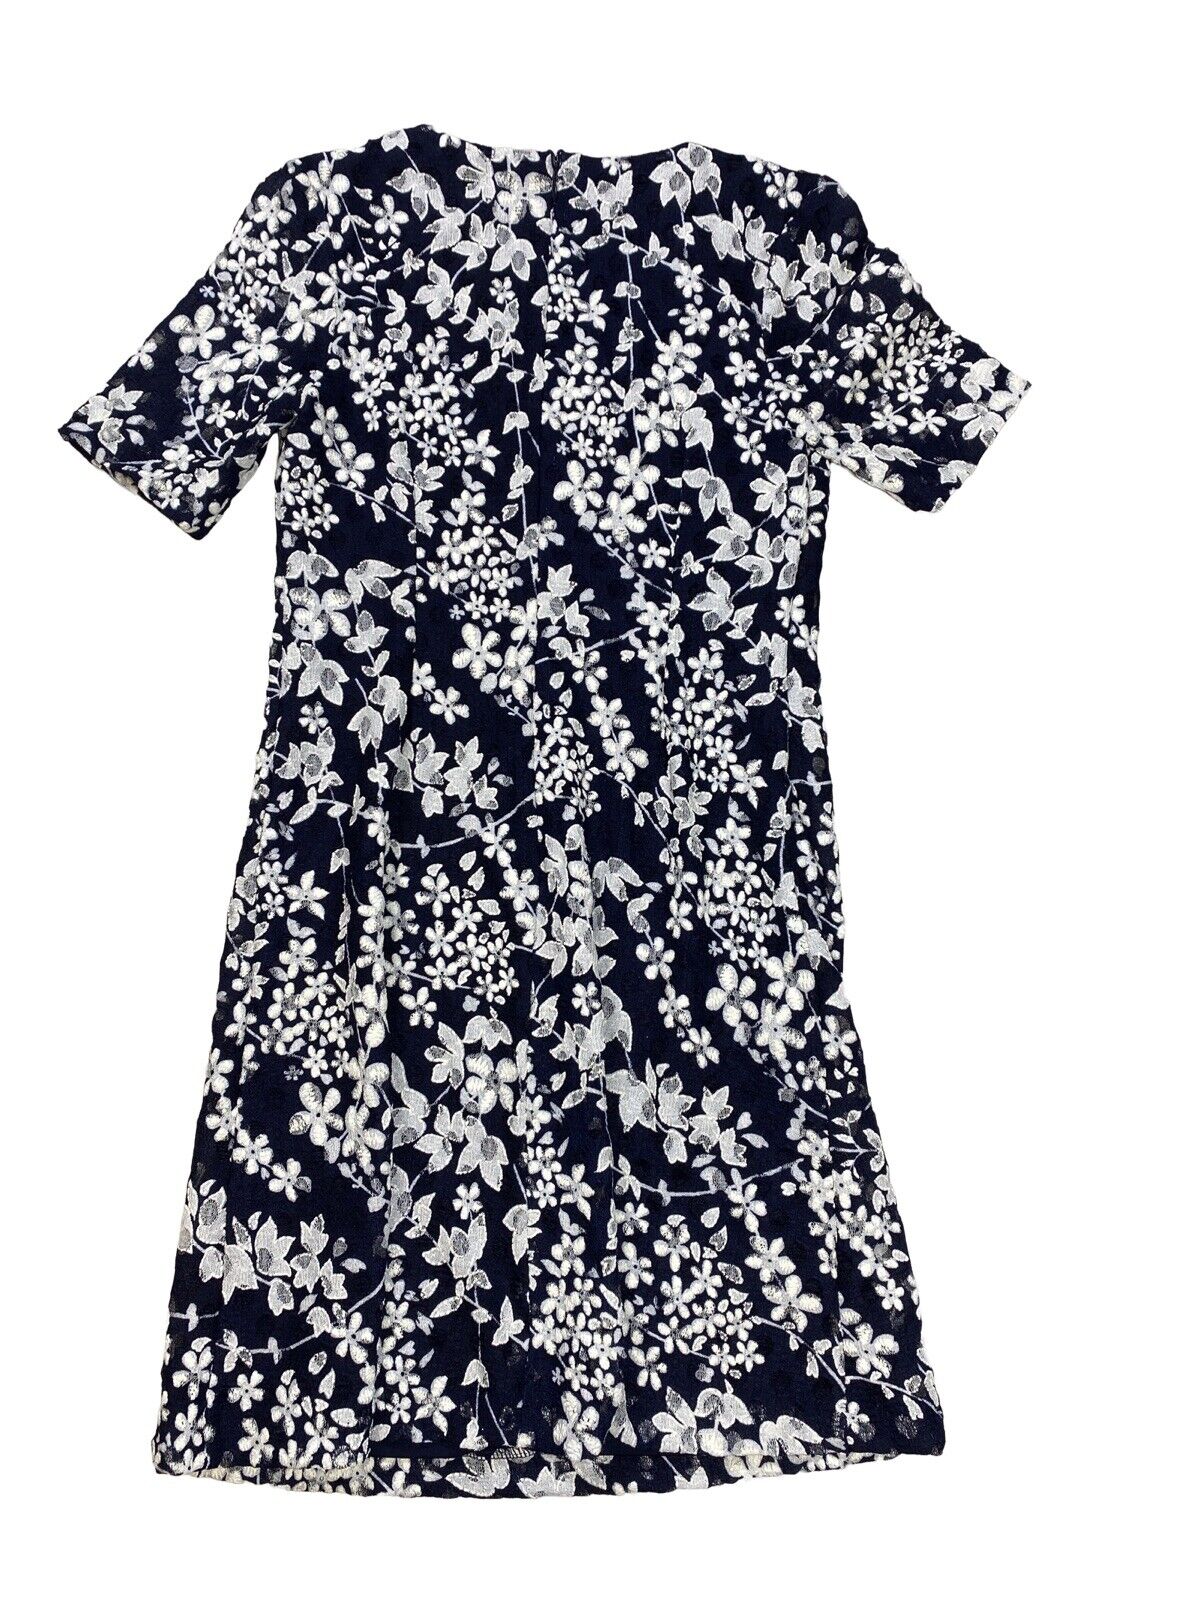 Karl Lagerfeld Women's Blue/White Lace Lined Sheath Dress - 2